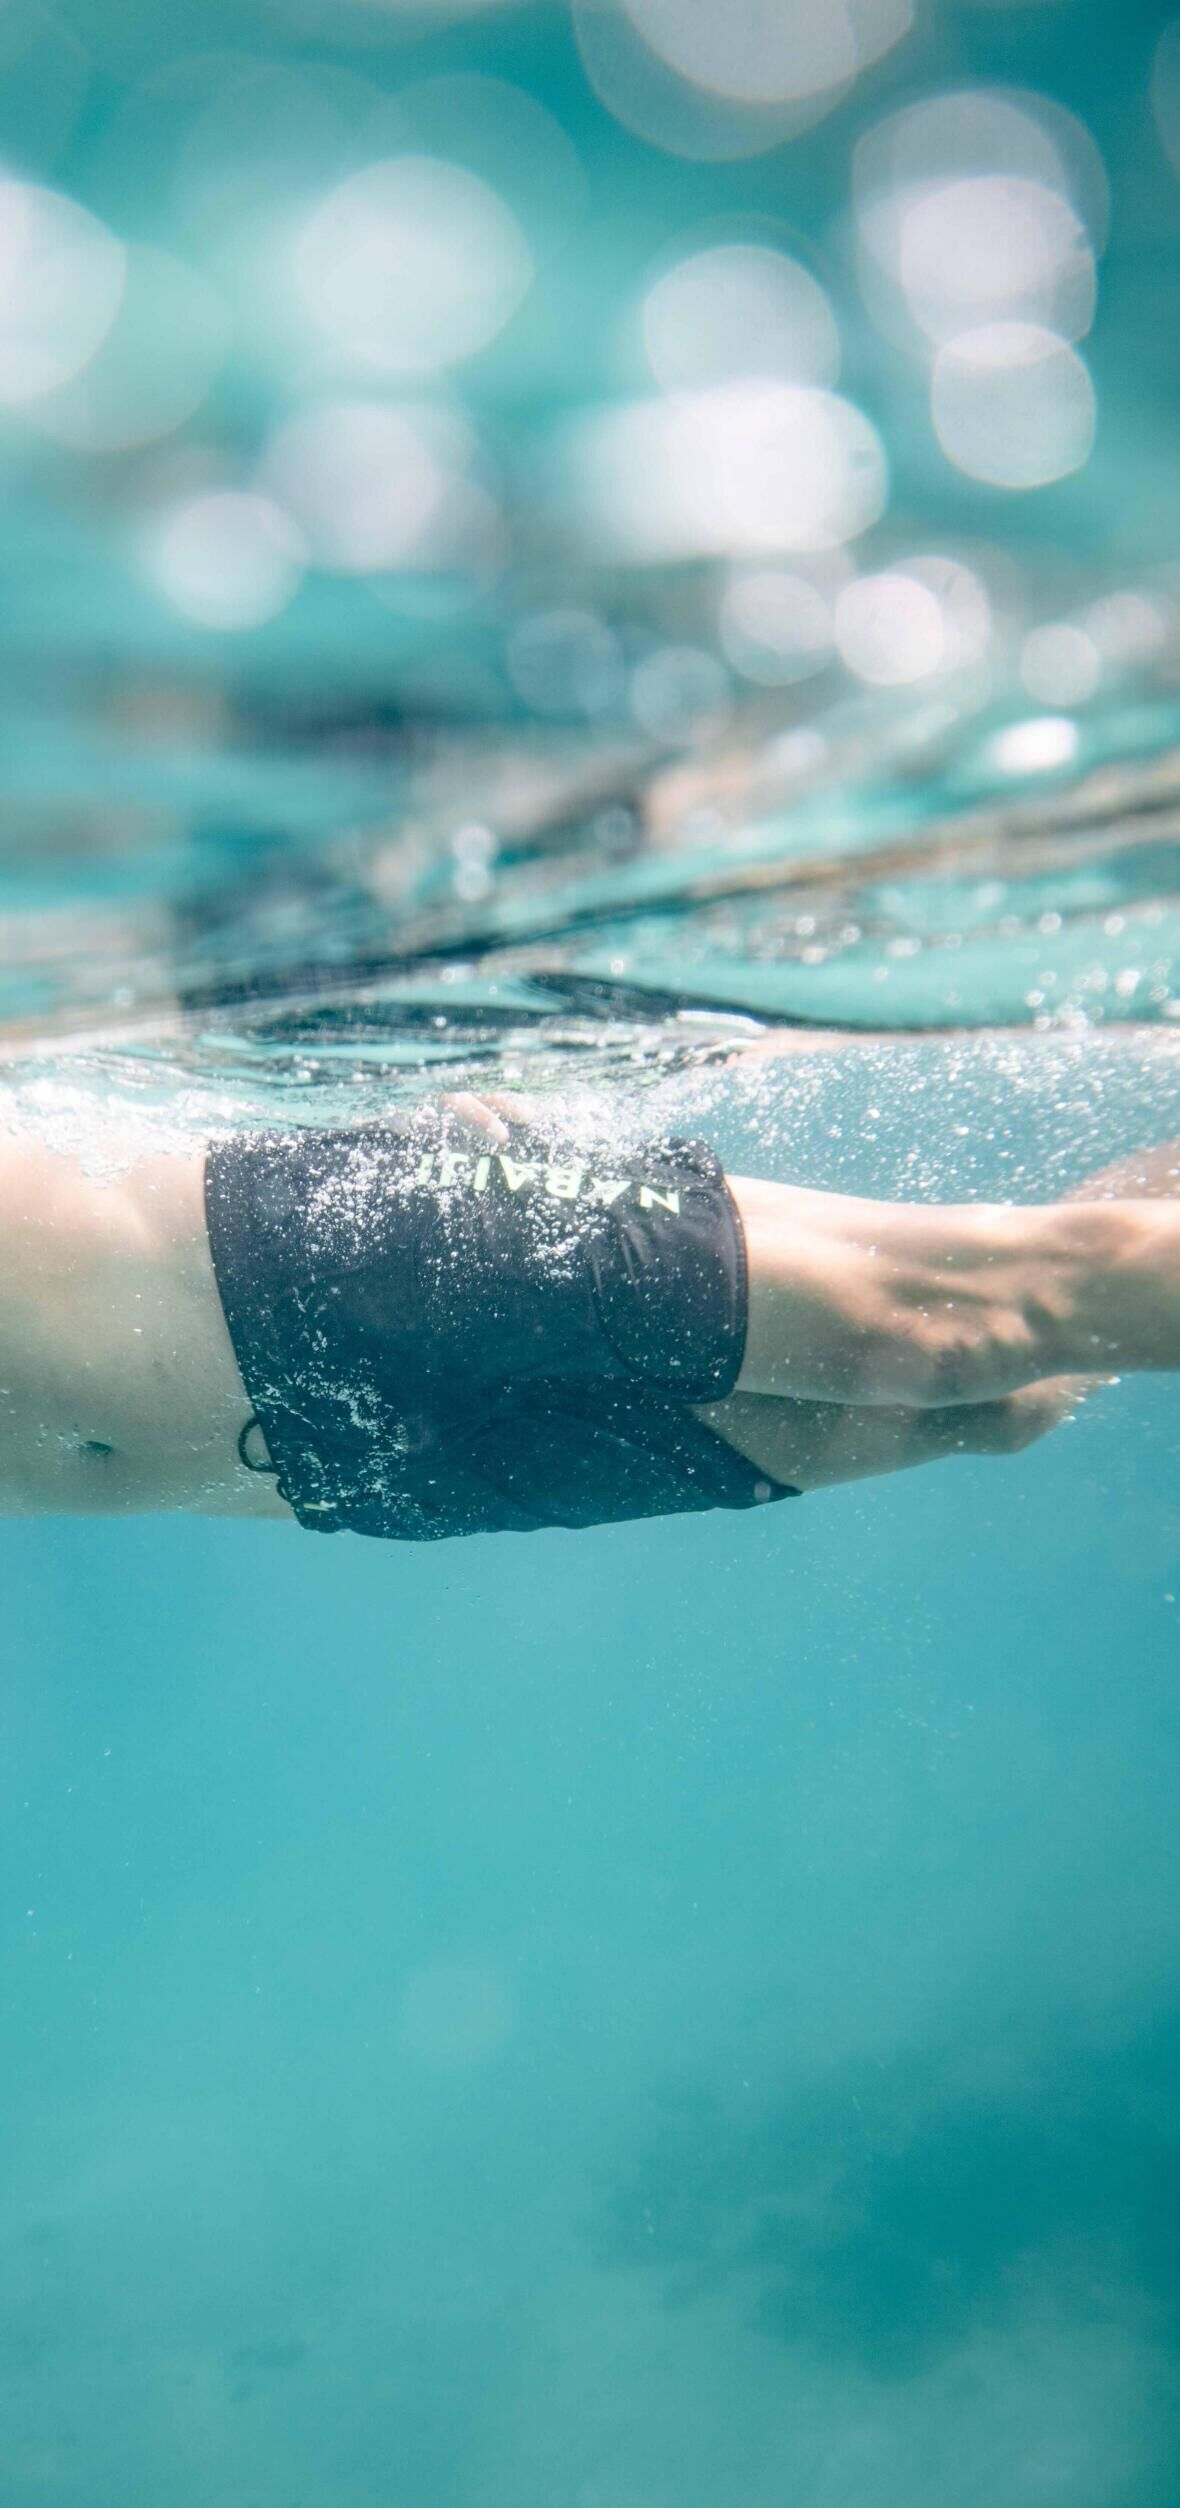 Améliorer ses battements de jambes en natation